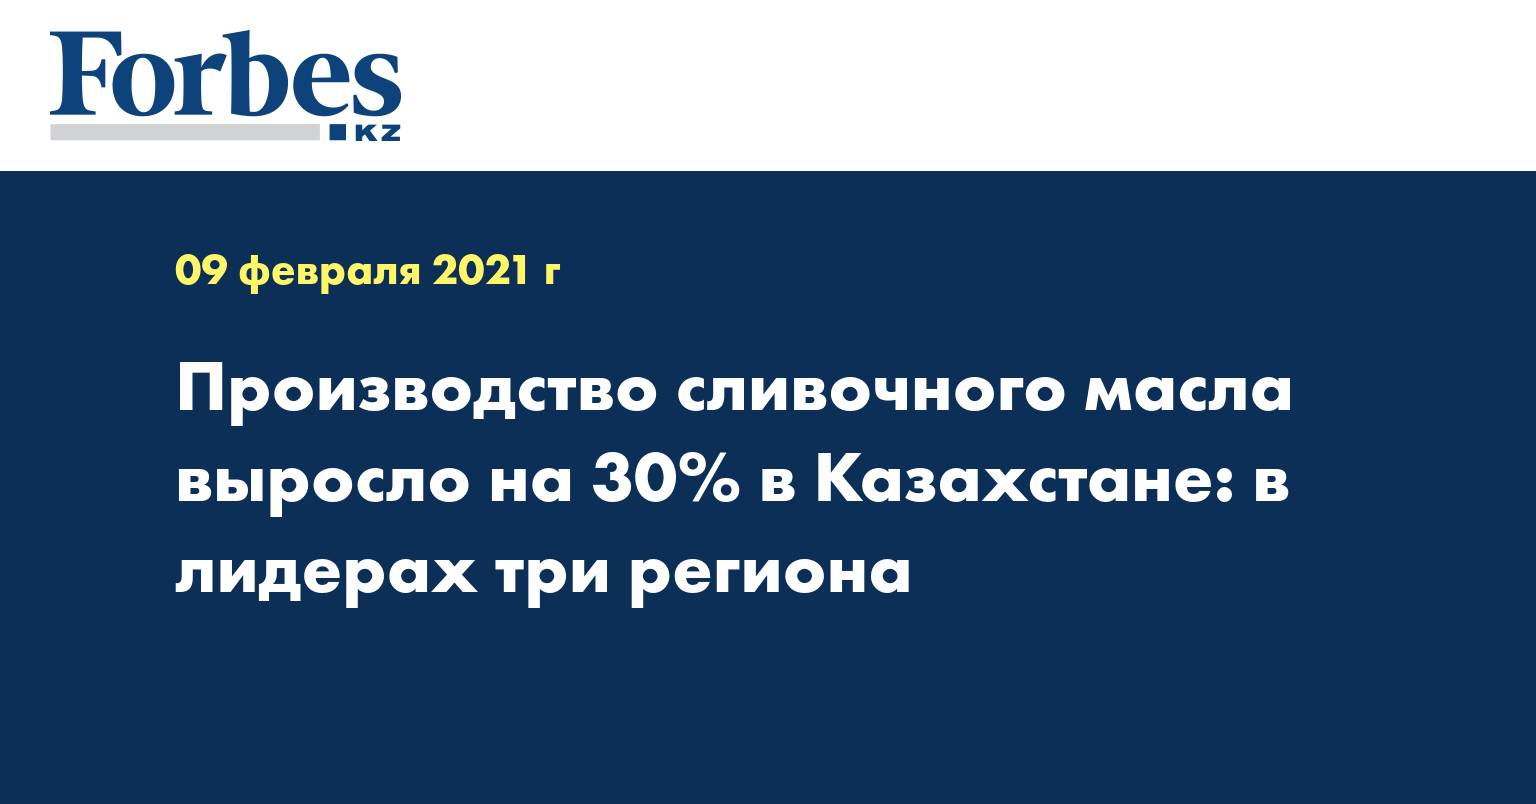  Производство сливочного масла выросло на 30 % в Казахстане: в лидерах три региона